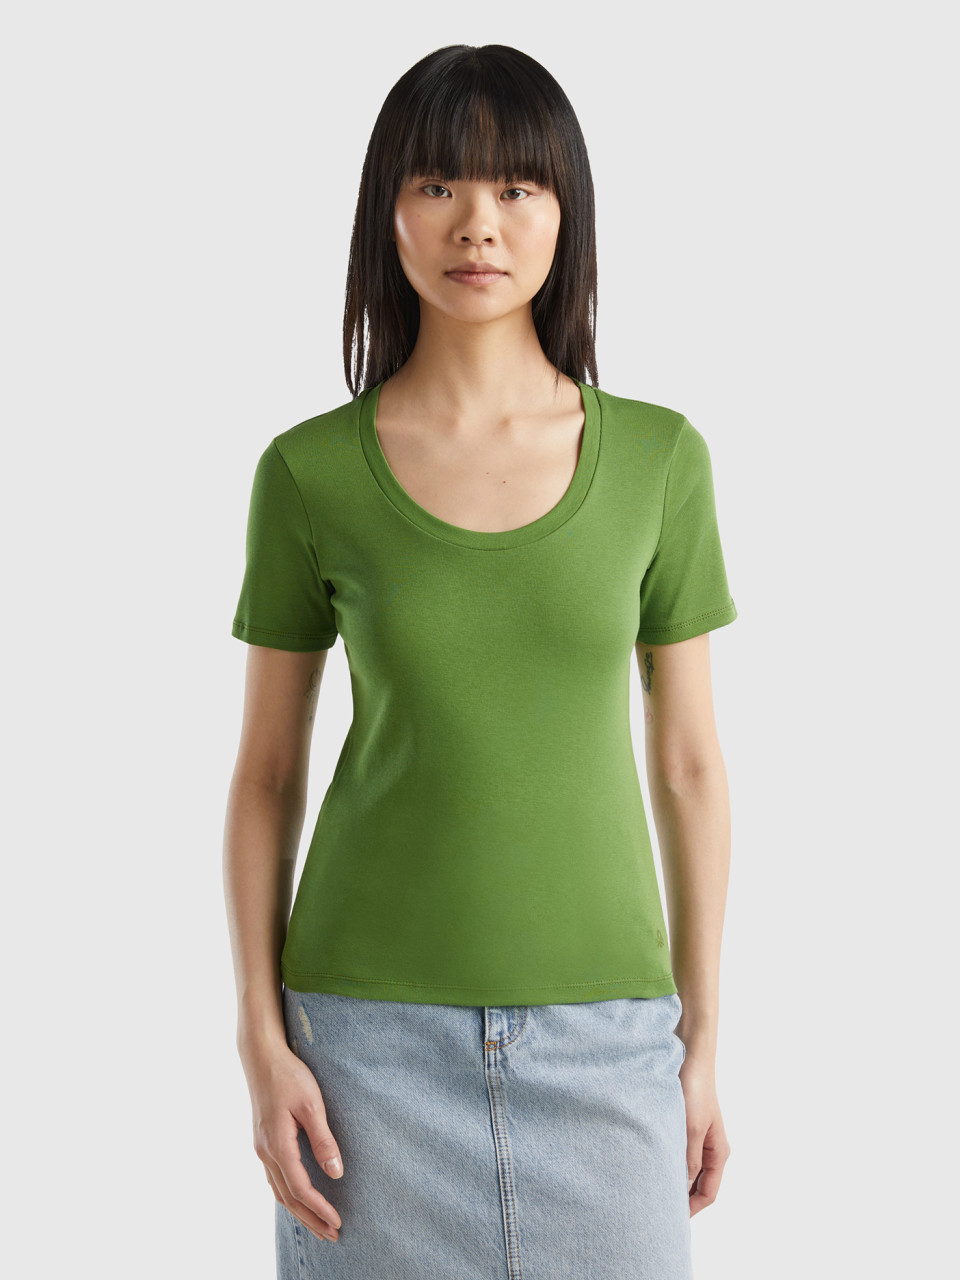 Benetton, Short Sleeve T-shirt In Long Fiber Cotton, Military Green, Women